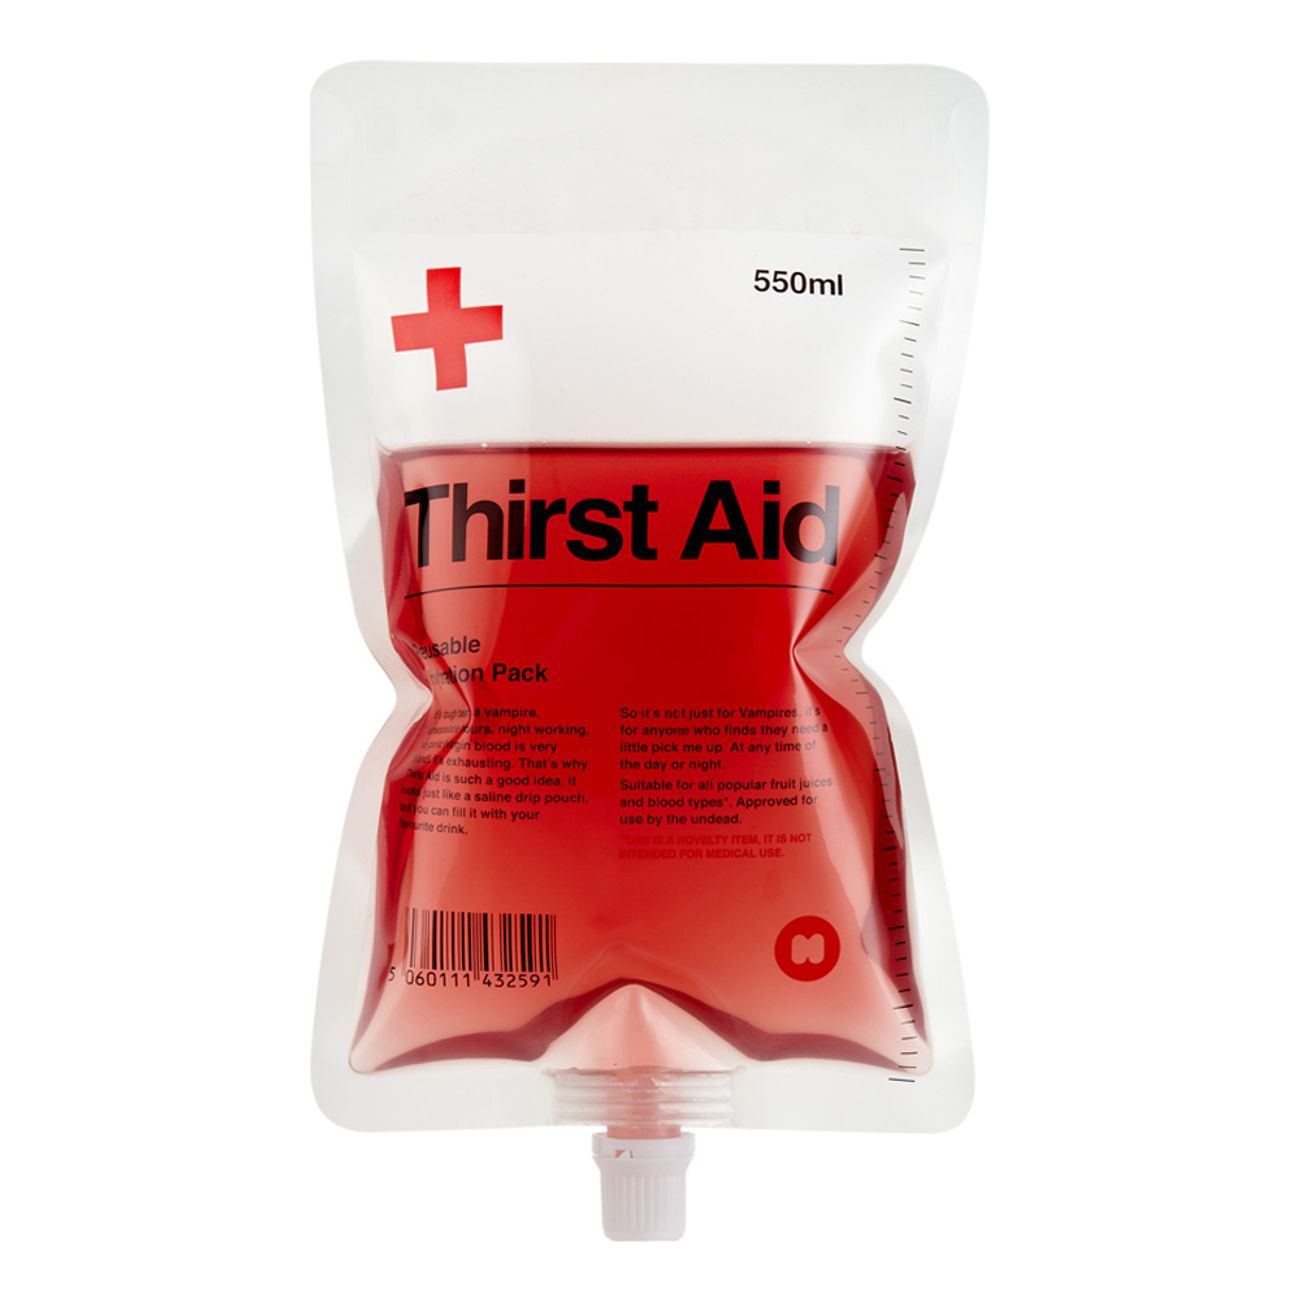 thirst-aid-drinkbehallare-1